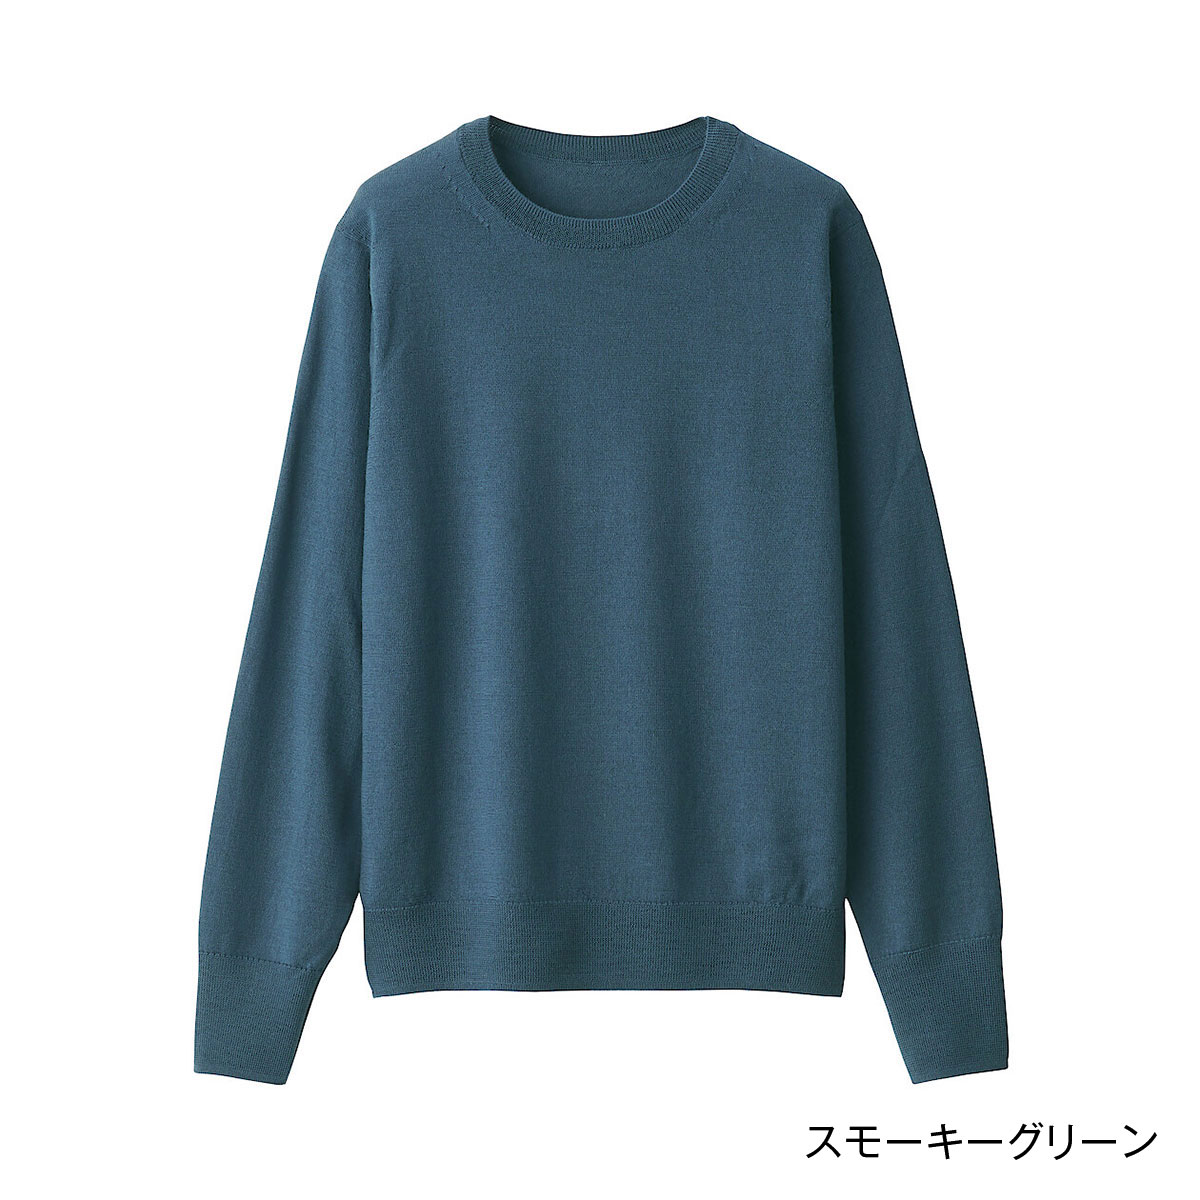 楽天市場】【無印良品 公式】メリノウール洗えるクルーネックセーター